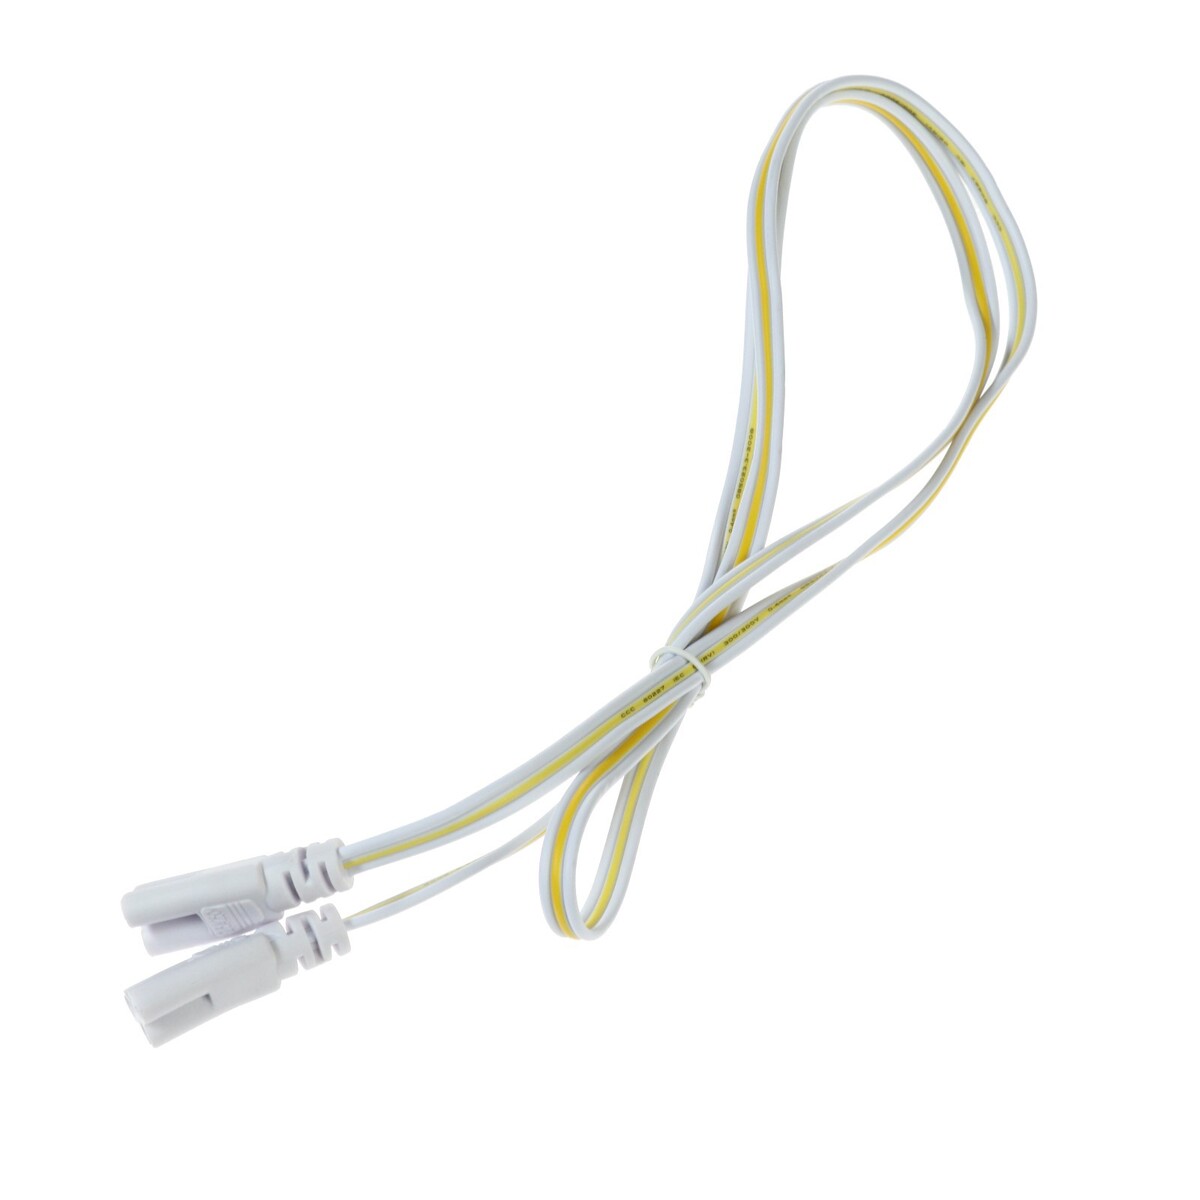 Провод соединительный для светильников, разъем l/n/g, 100 см, белый геймпад для dendy 8 bit 9pin узкий разъем